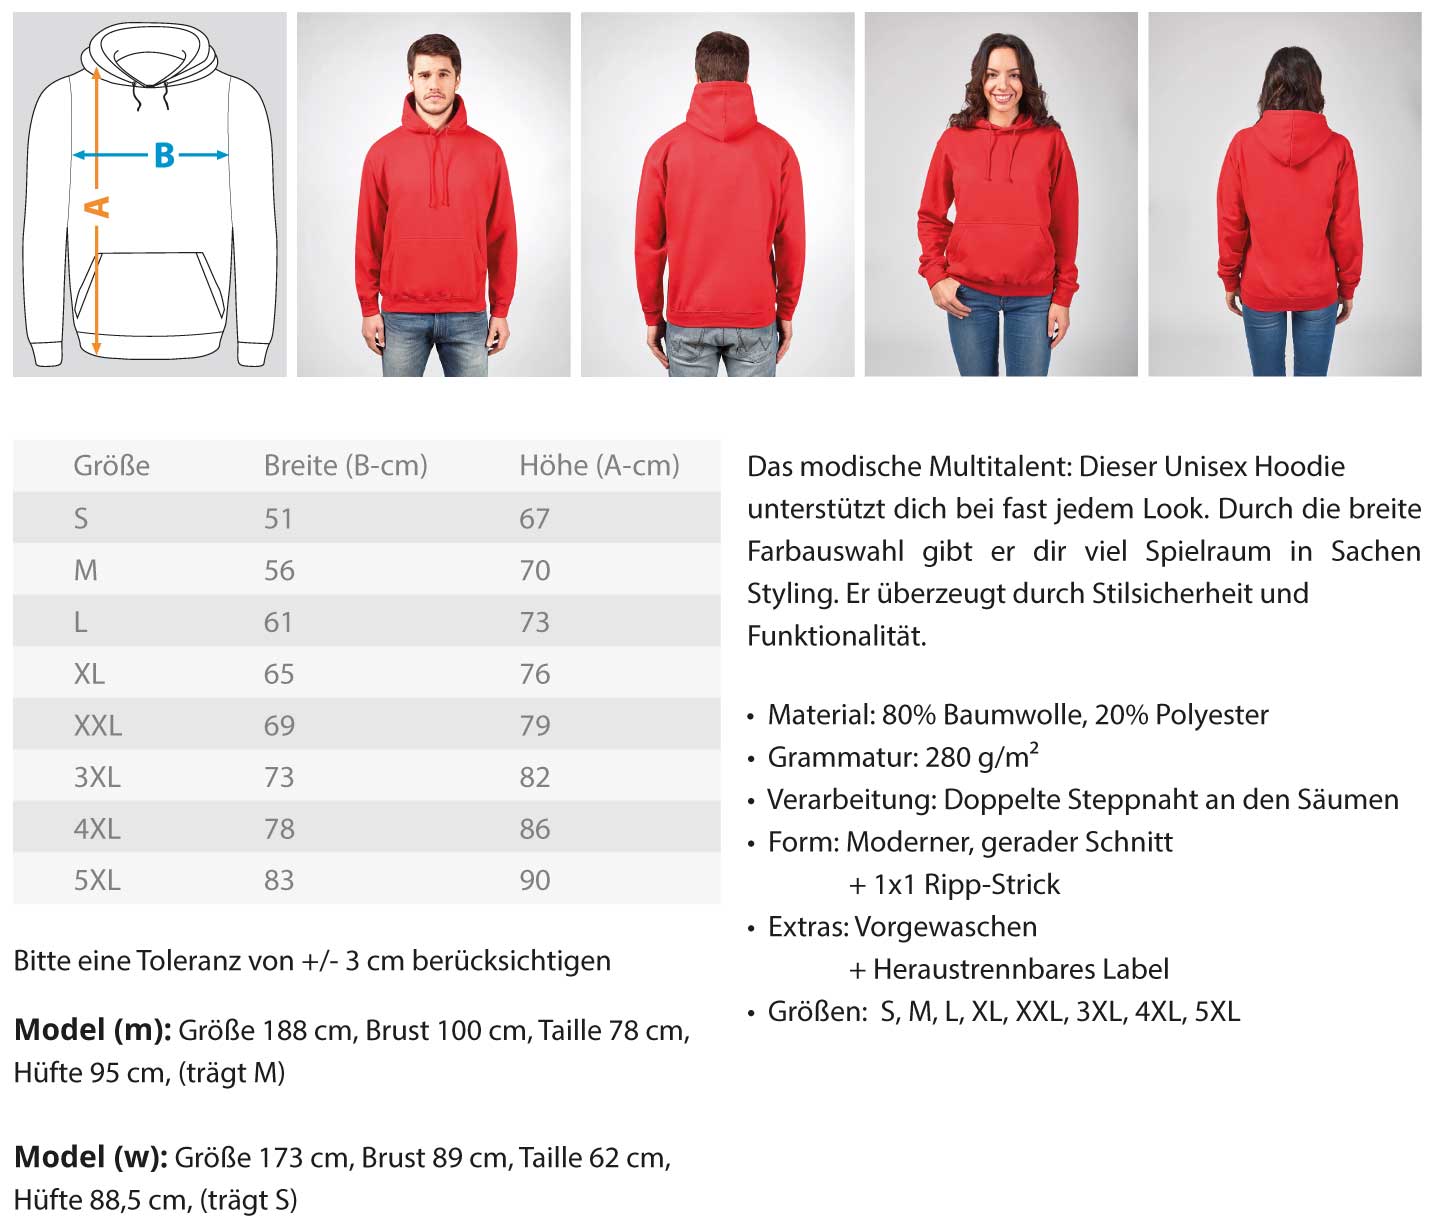 Scaffolder Stay Wild €34.95 Gerüstbauer - Shop >>